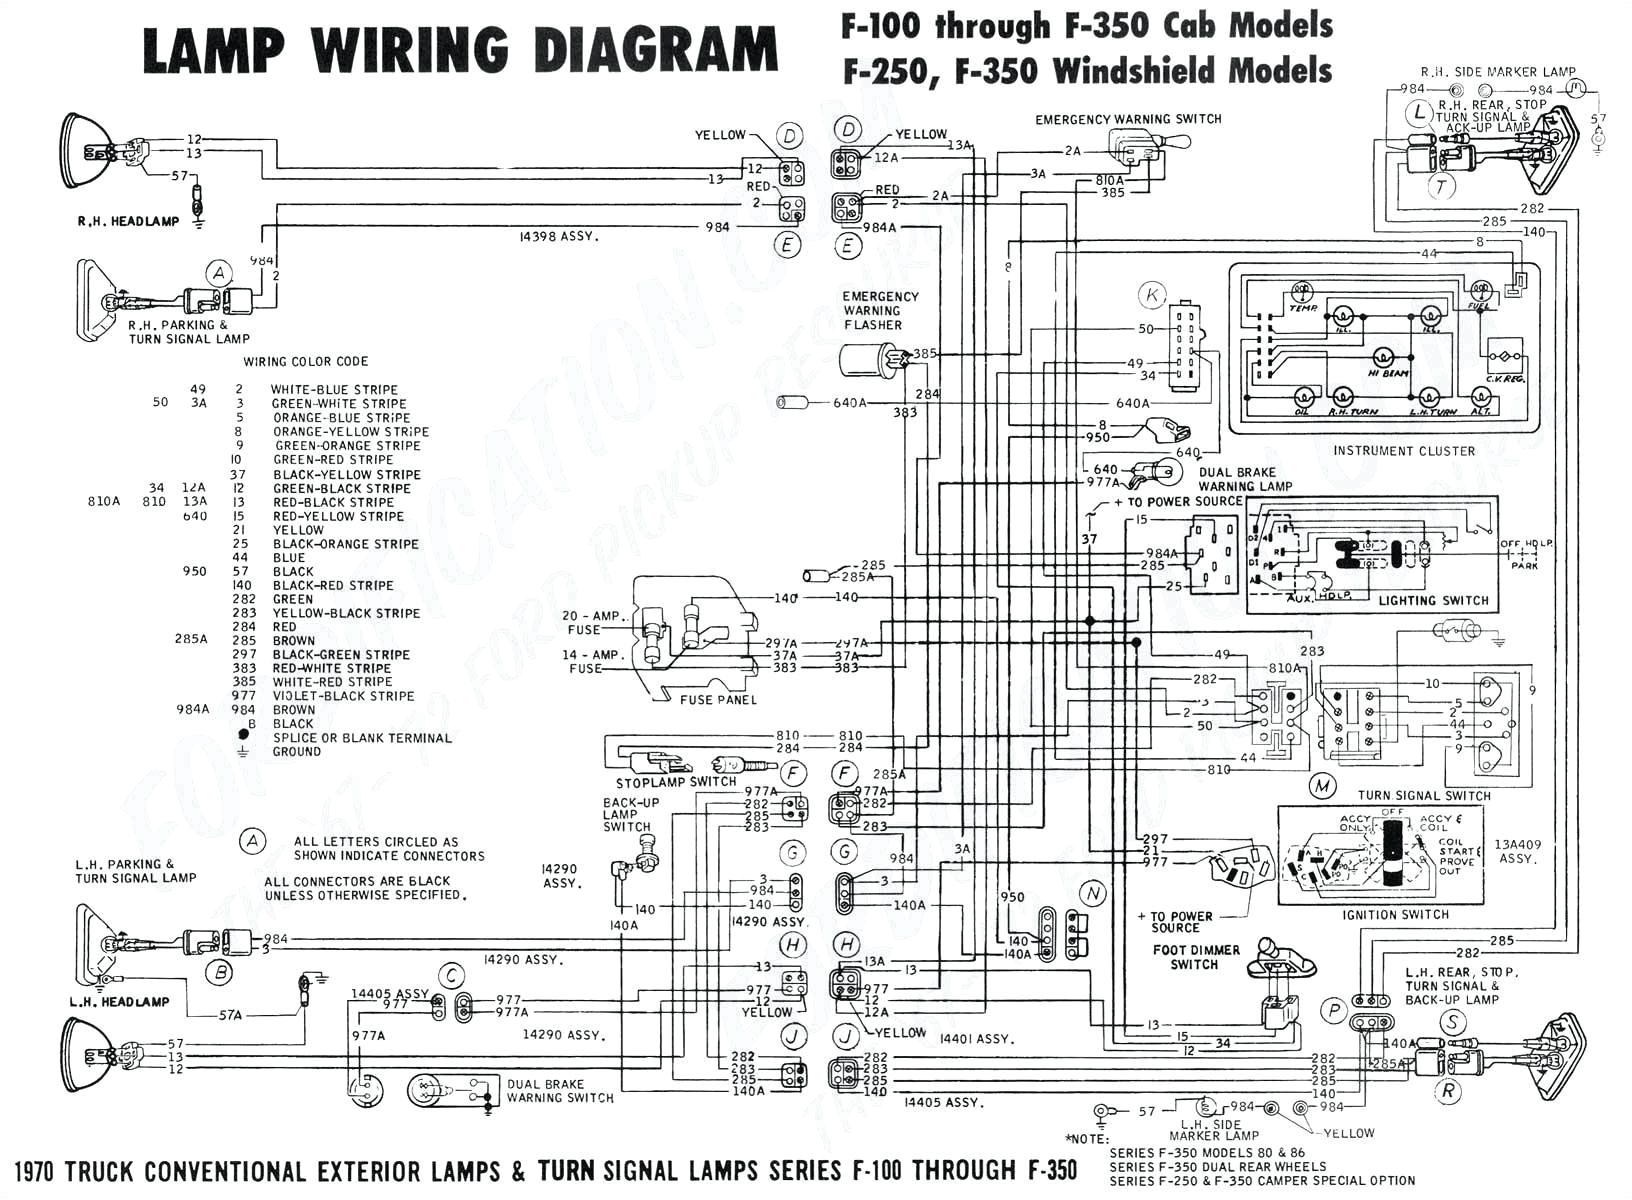 Honda Gx160 Electric Start Wiring Diagram 3189 Mitsubishi Triton Wiring Diagram Tail Lights Wiring